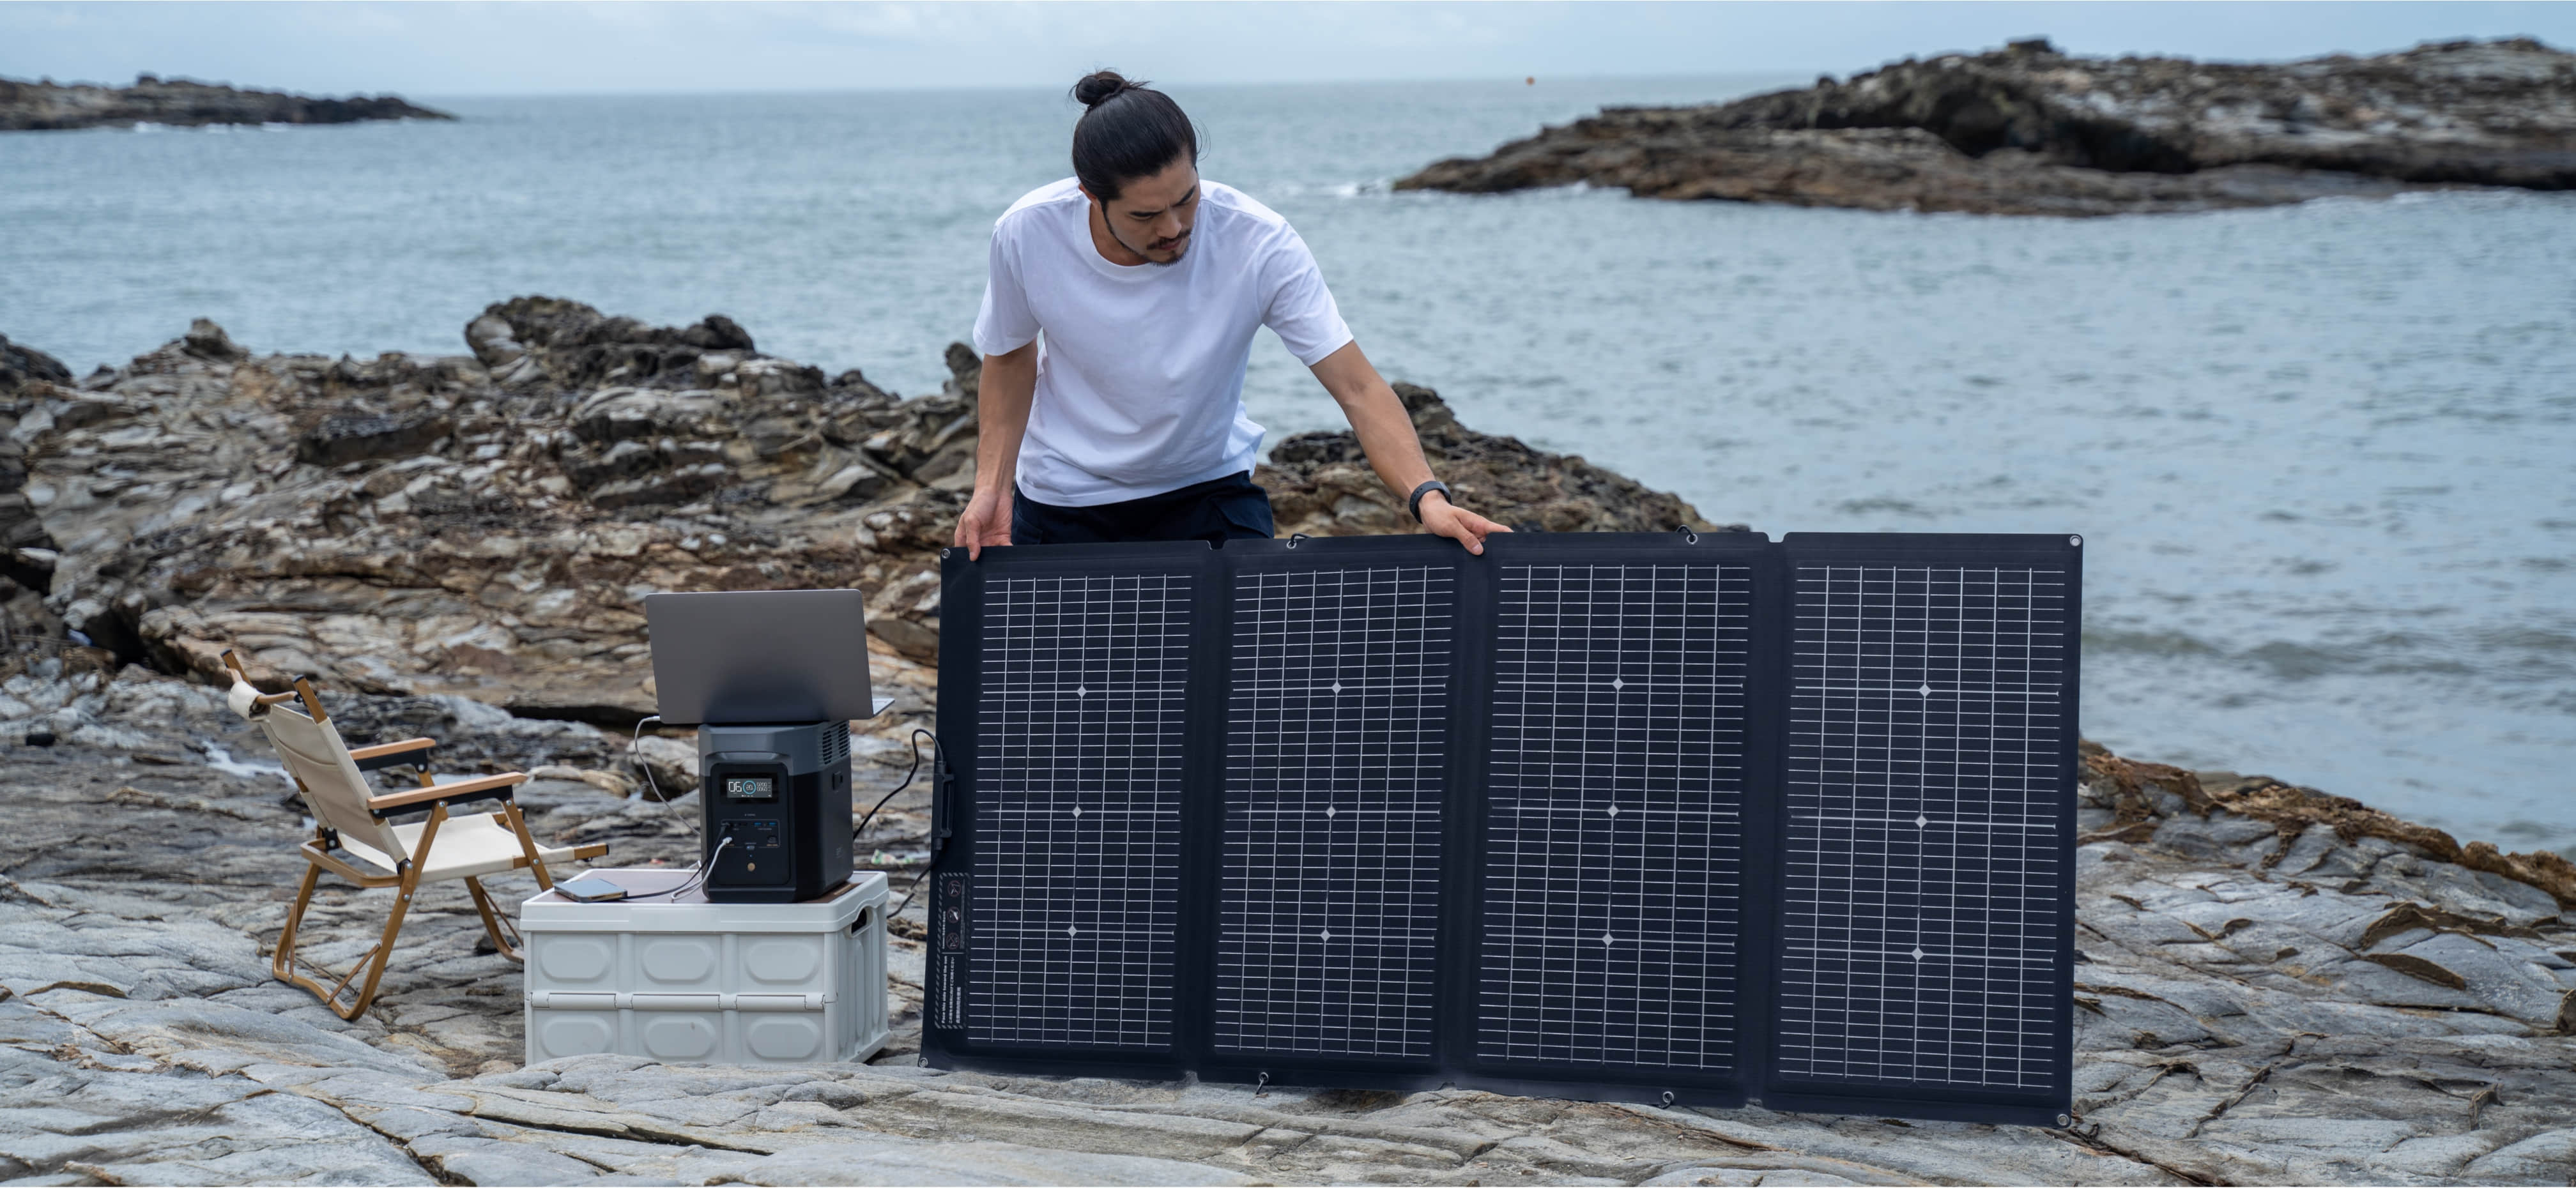 Choisissez parmi une gamme de panneaux solaires pour obtenir la vitesse dont vous avez besoin (110 W, 160 W, 220 W, 400 W). Grâce à cet appareil, vous pouvez accéder à de l'énergie gratuite où que vous soyez.